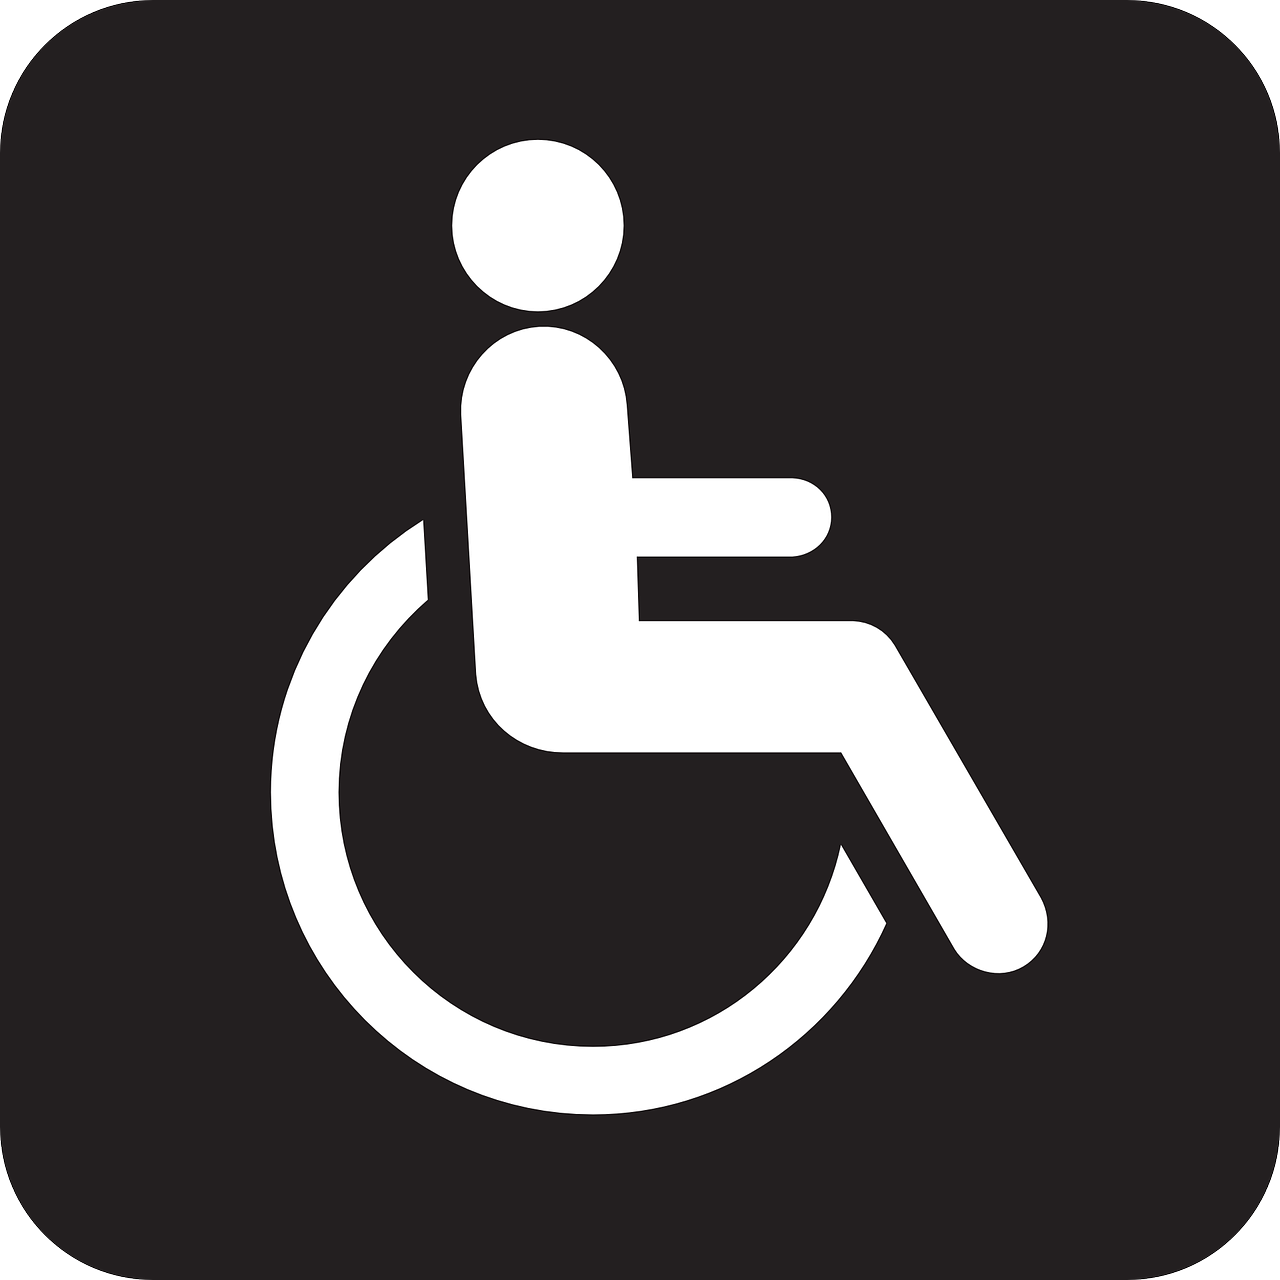 Talant Wonen Wynbrekker instelling gehandicaptenzorg verstandelijk gehandicapten beoordeling